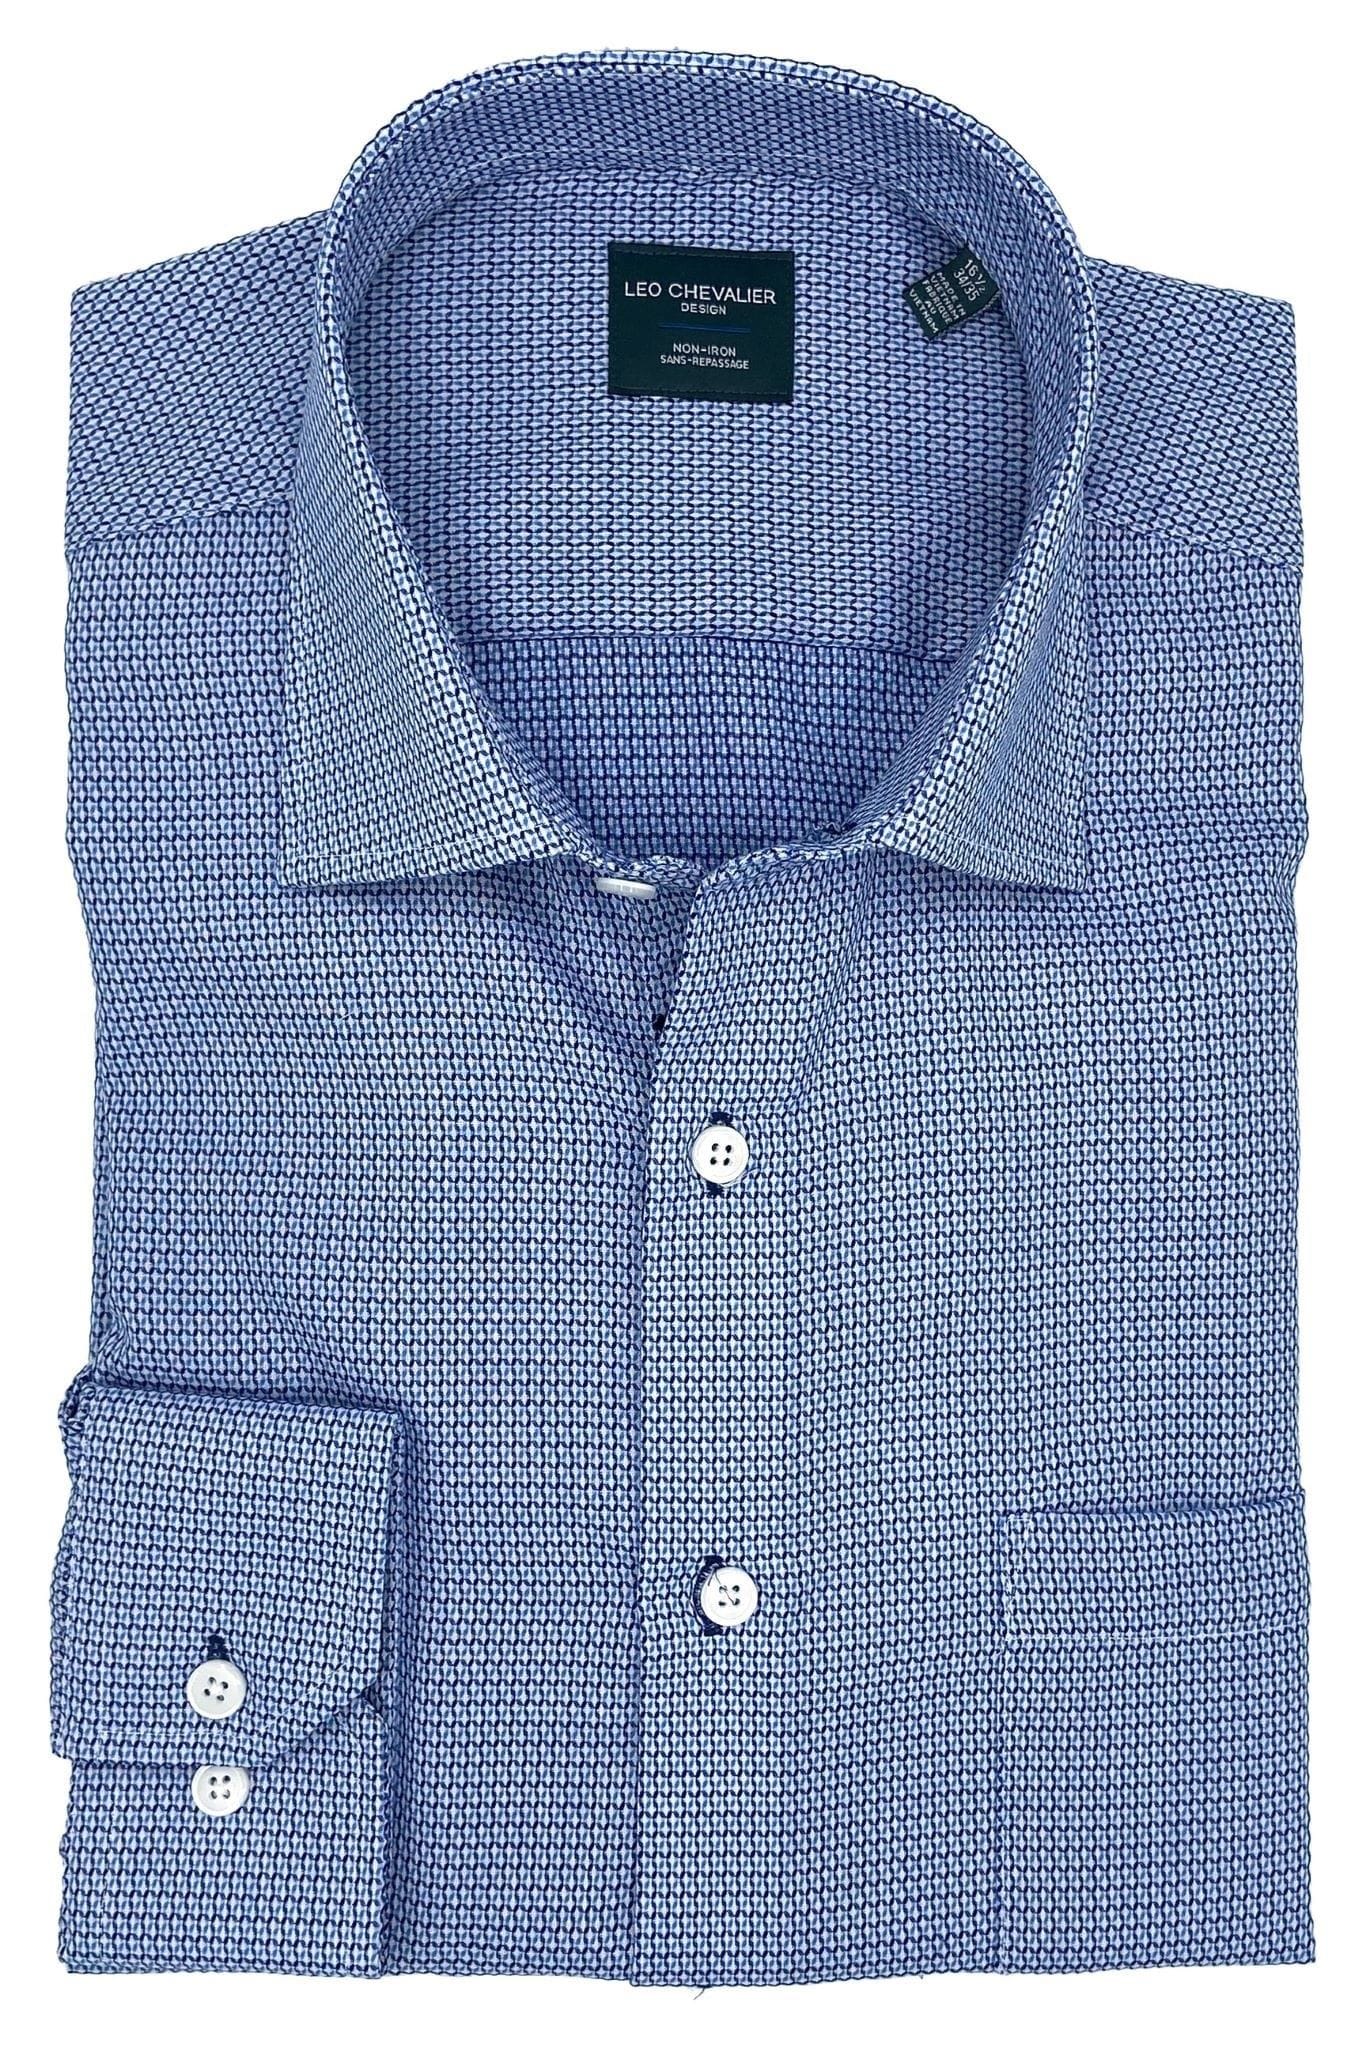 Leo Chevalier Design Non-Iron Blue Print Men's Dress Shirts